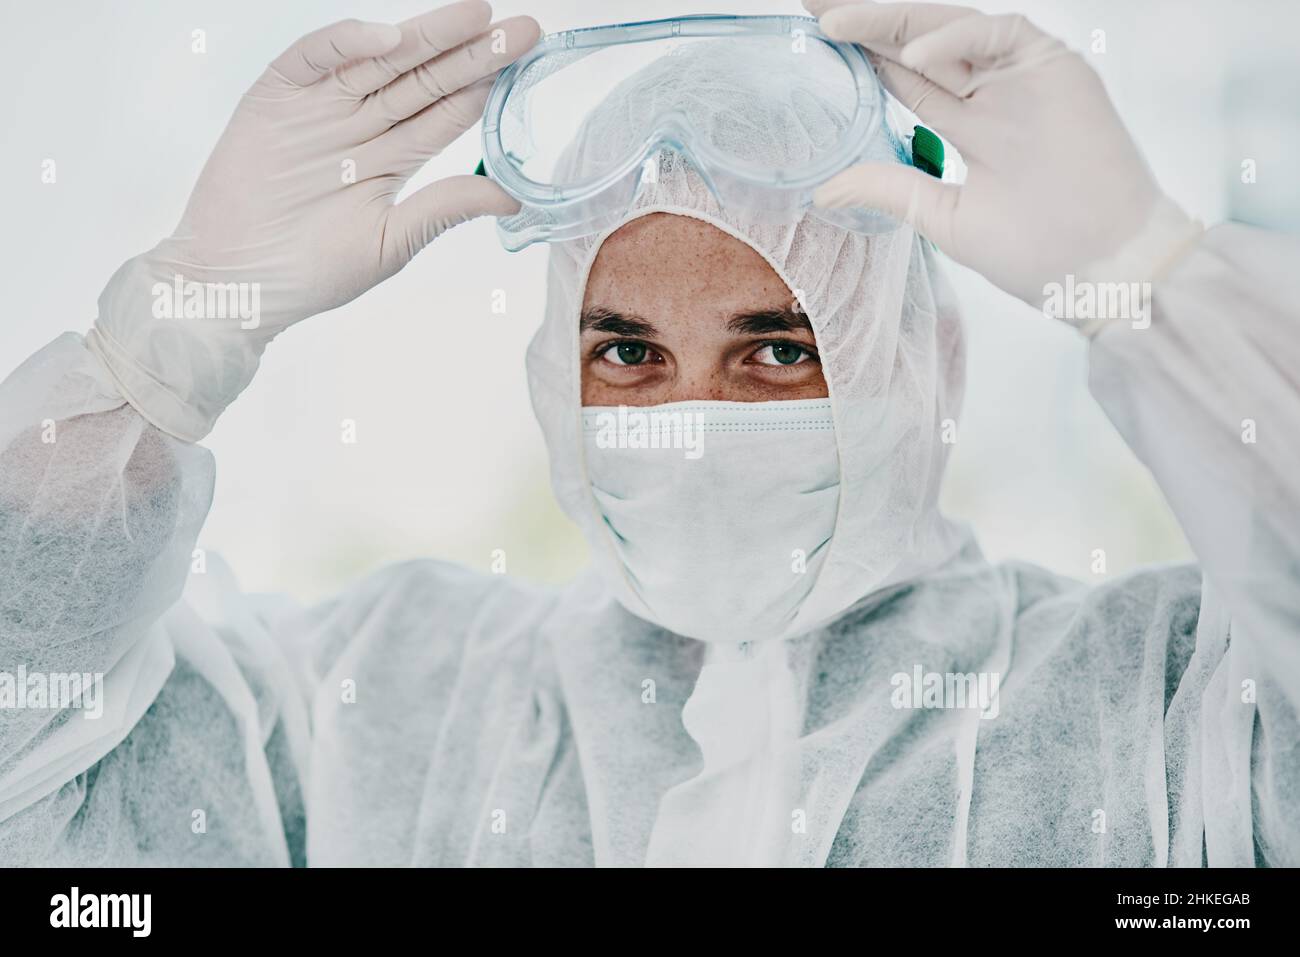 Es ist Zeit, dieses Virus zu vernichten. Aufnahme eines jungen Mannes, der vor der Dekontamination seine Schutzkleidung auflegte. Stockfoto